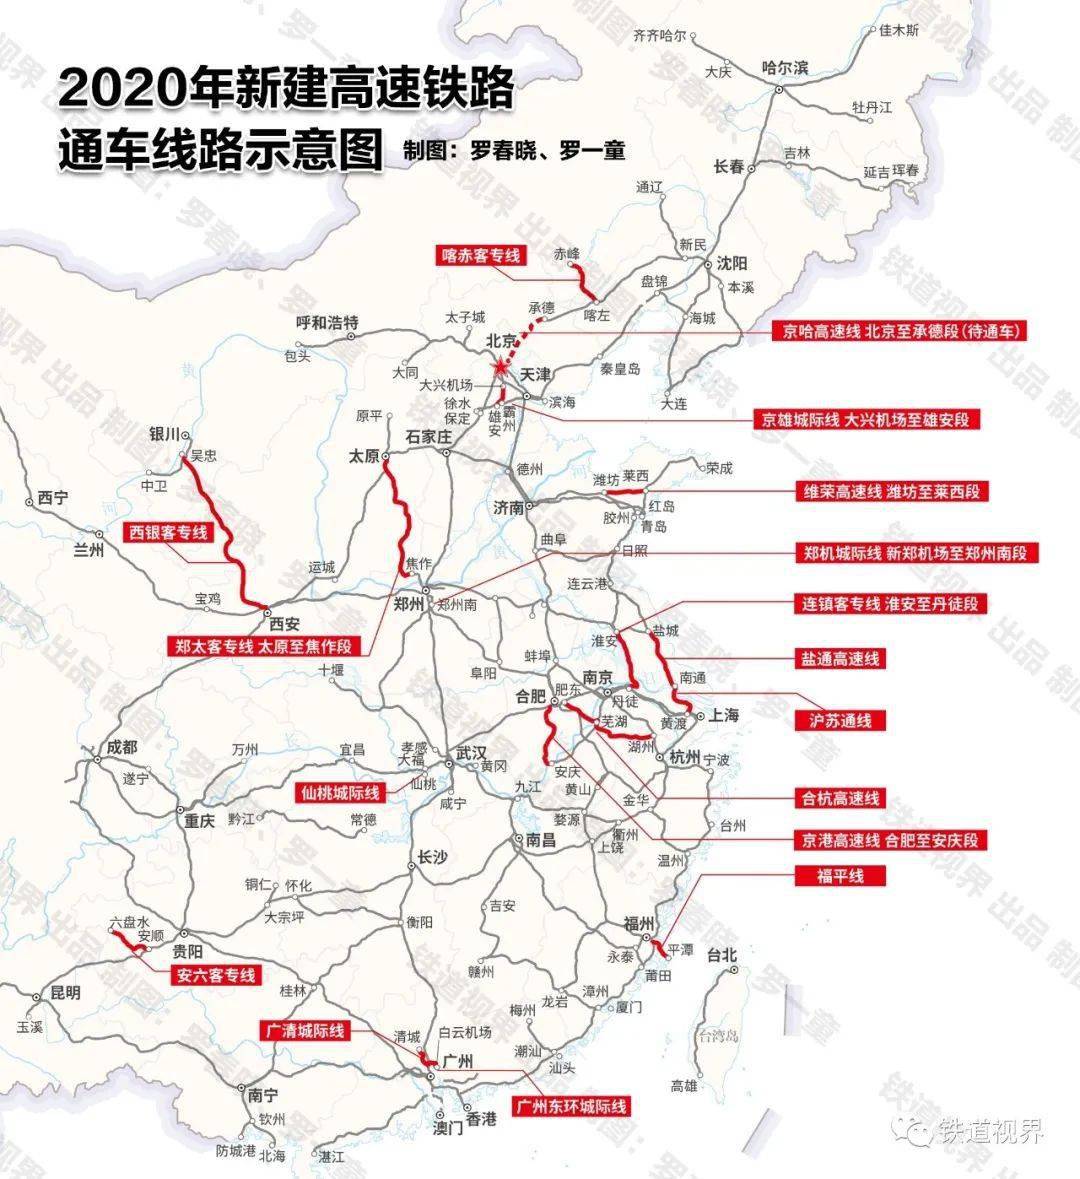 2020年高铁将达lol菠菜网正规平台3万公里 覆盖80以上的大城市